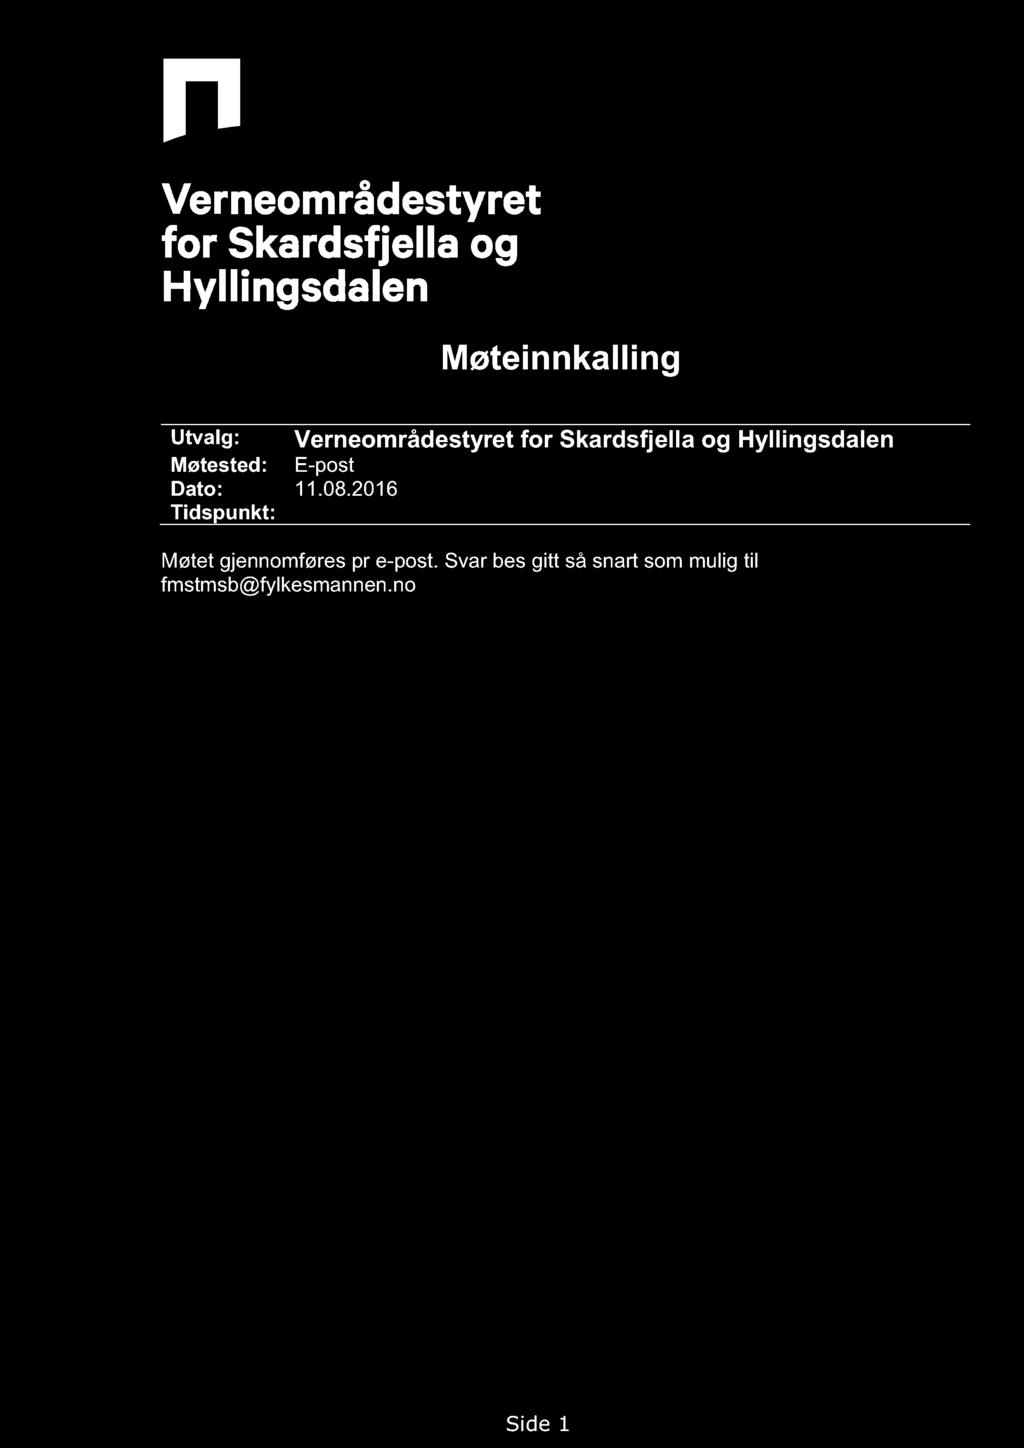 Møteinnkalling Utvalg: Verneområdesty ret for Skardsfjella og Hyllingsdalen Møtested: E-post Dato: 11.08.